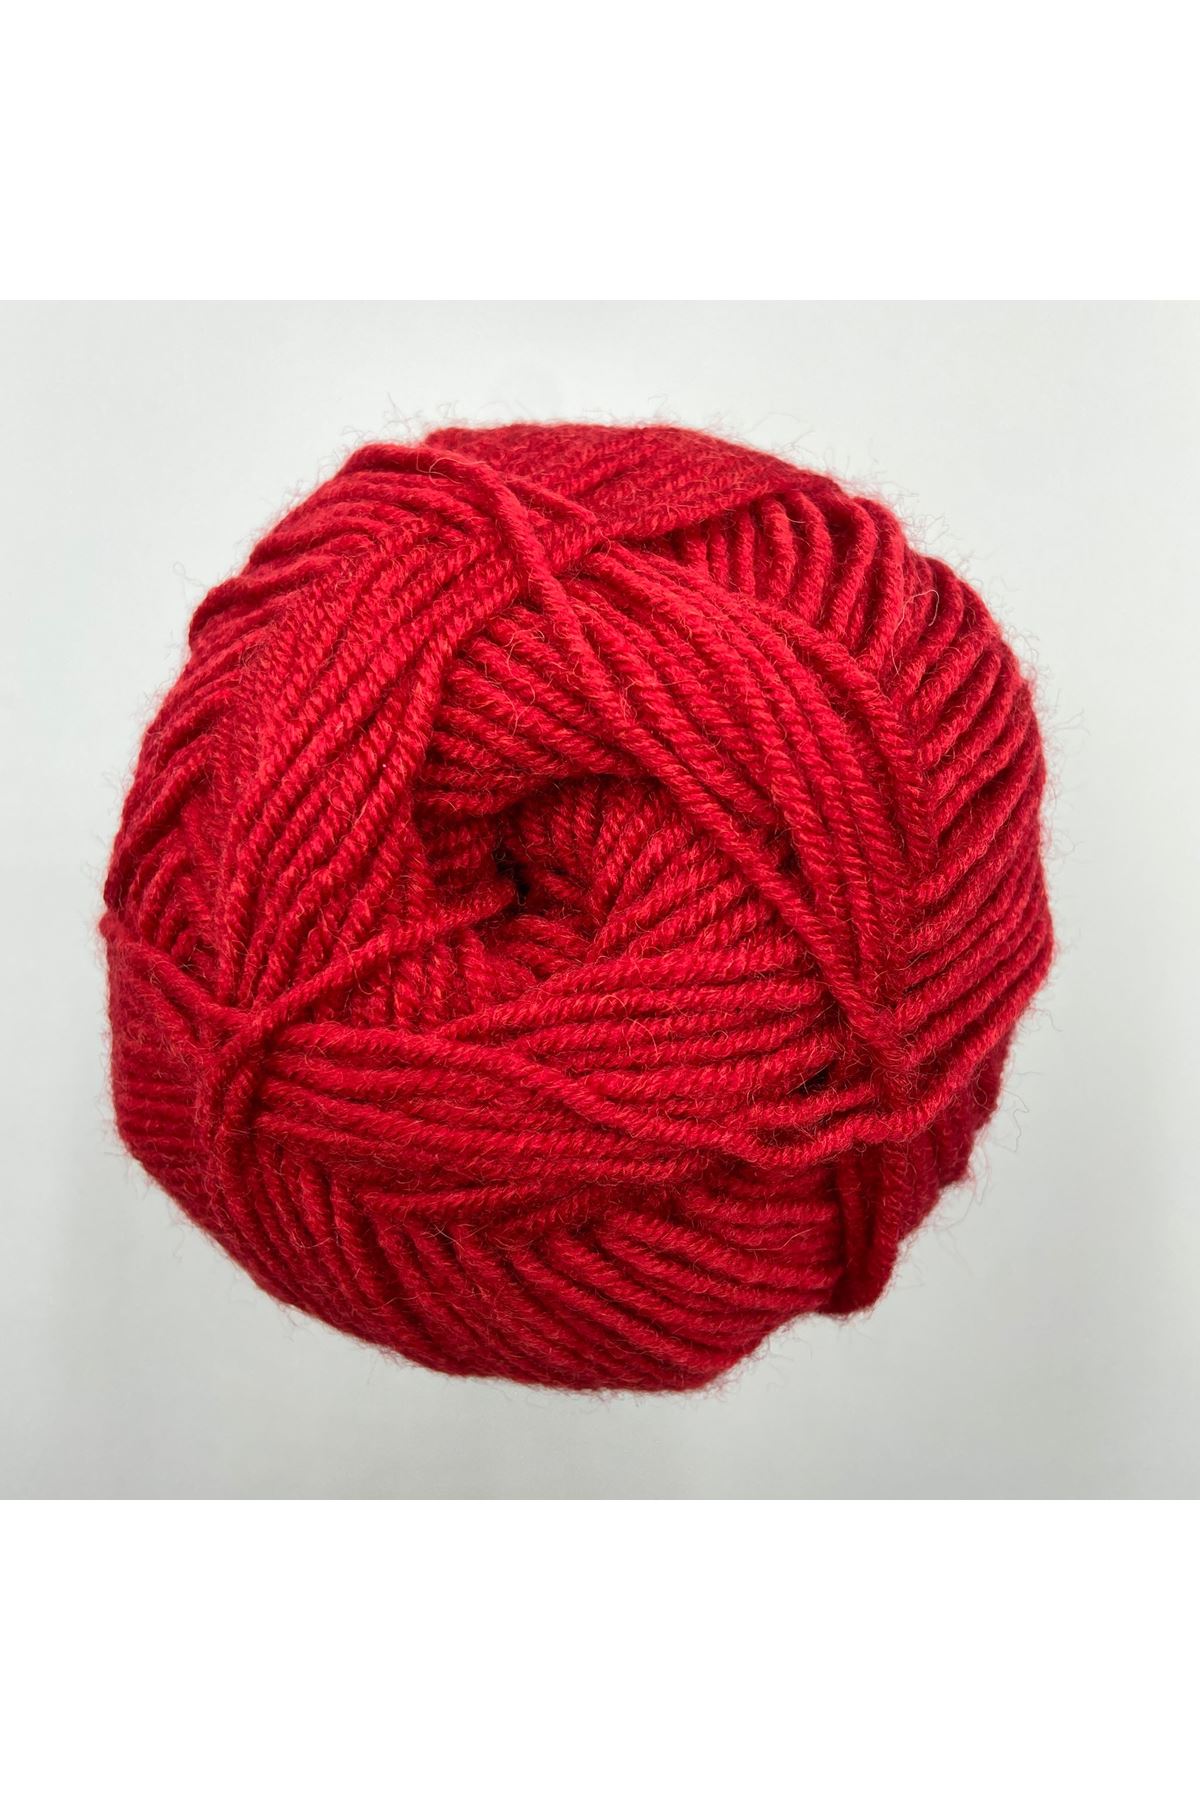 Lady Yarn Super Wool NW016 Kırmızı